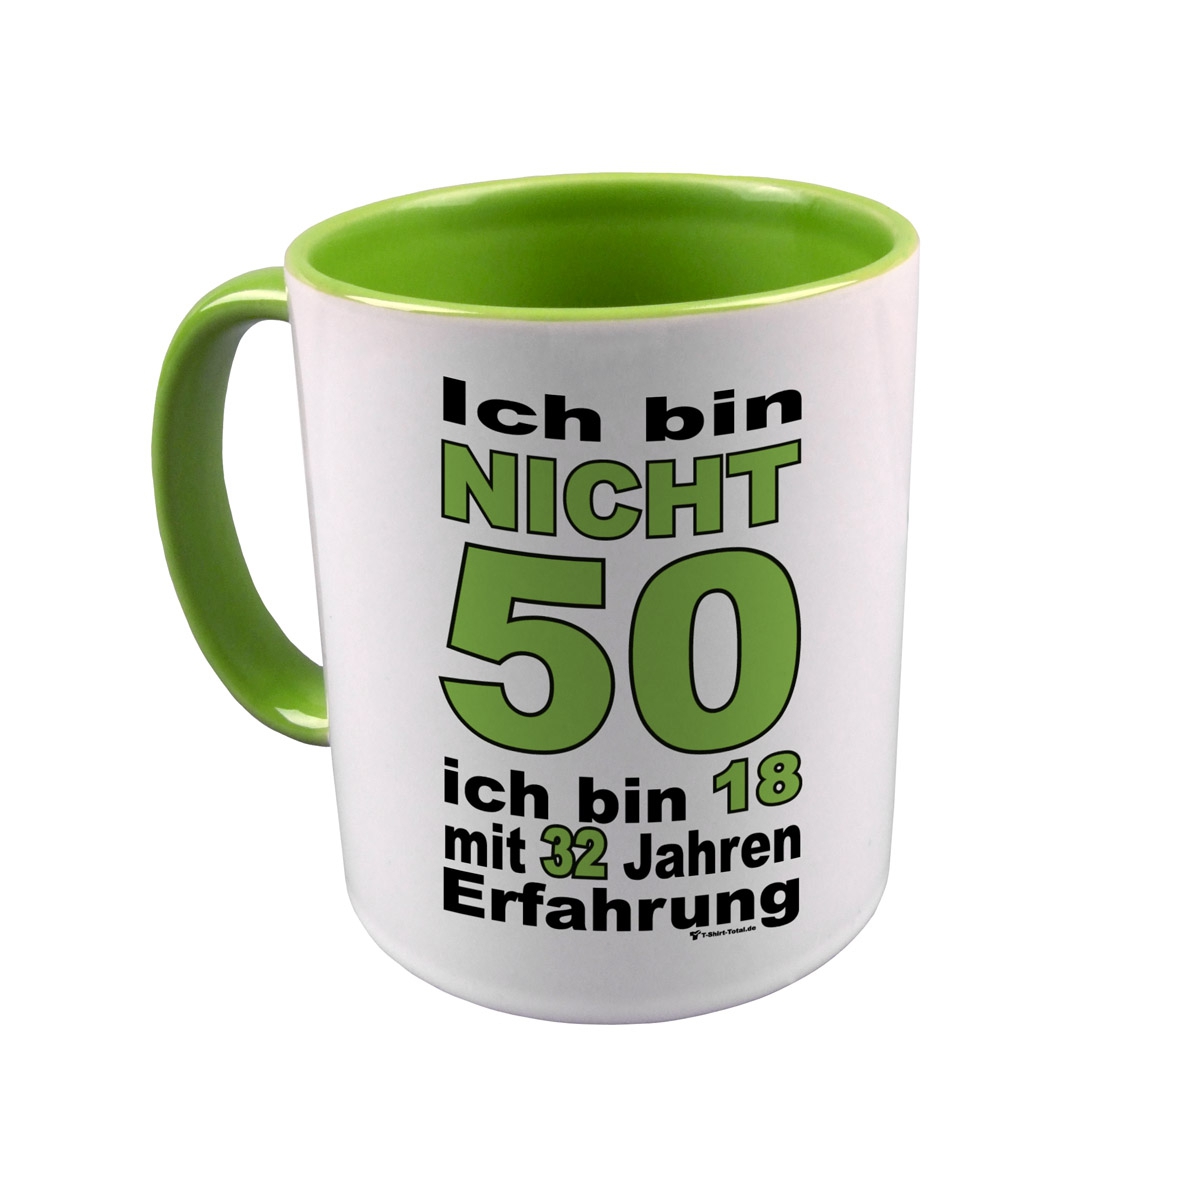 Bin nicht 50 Tasse hellgrün / weiß